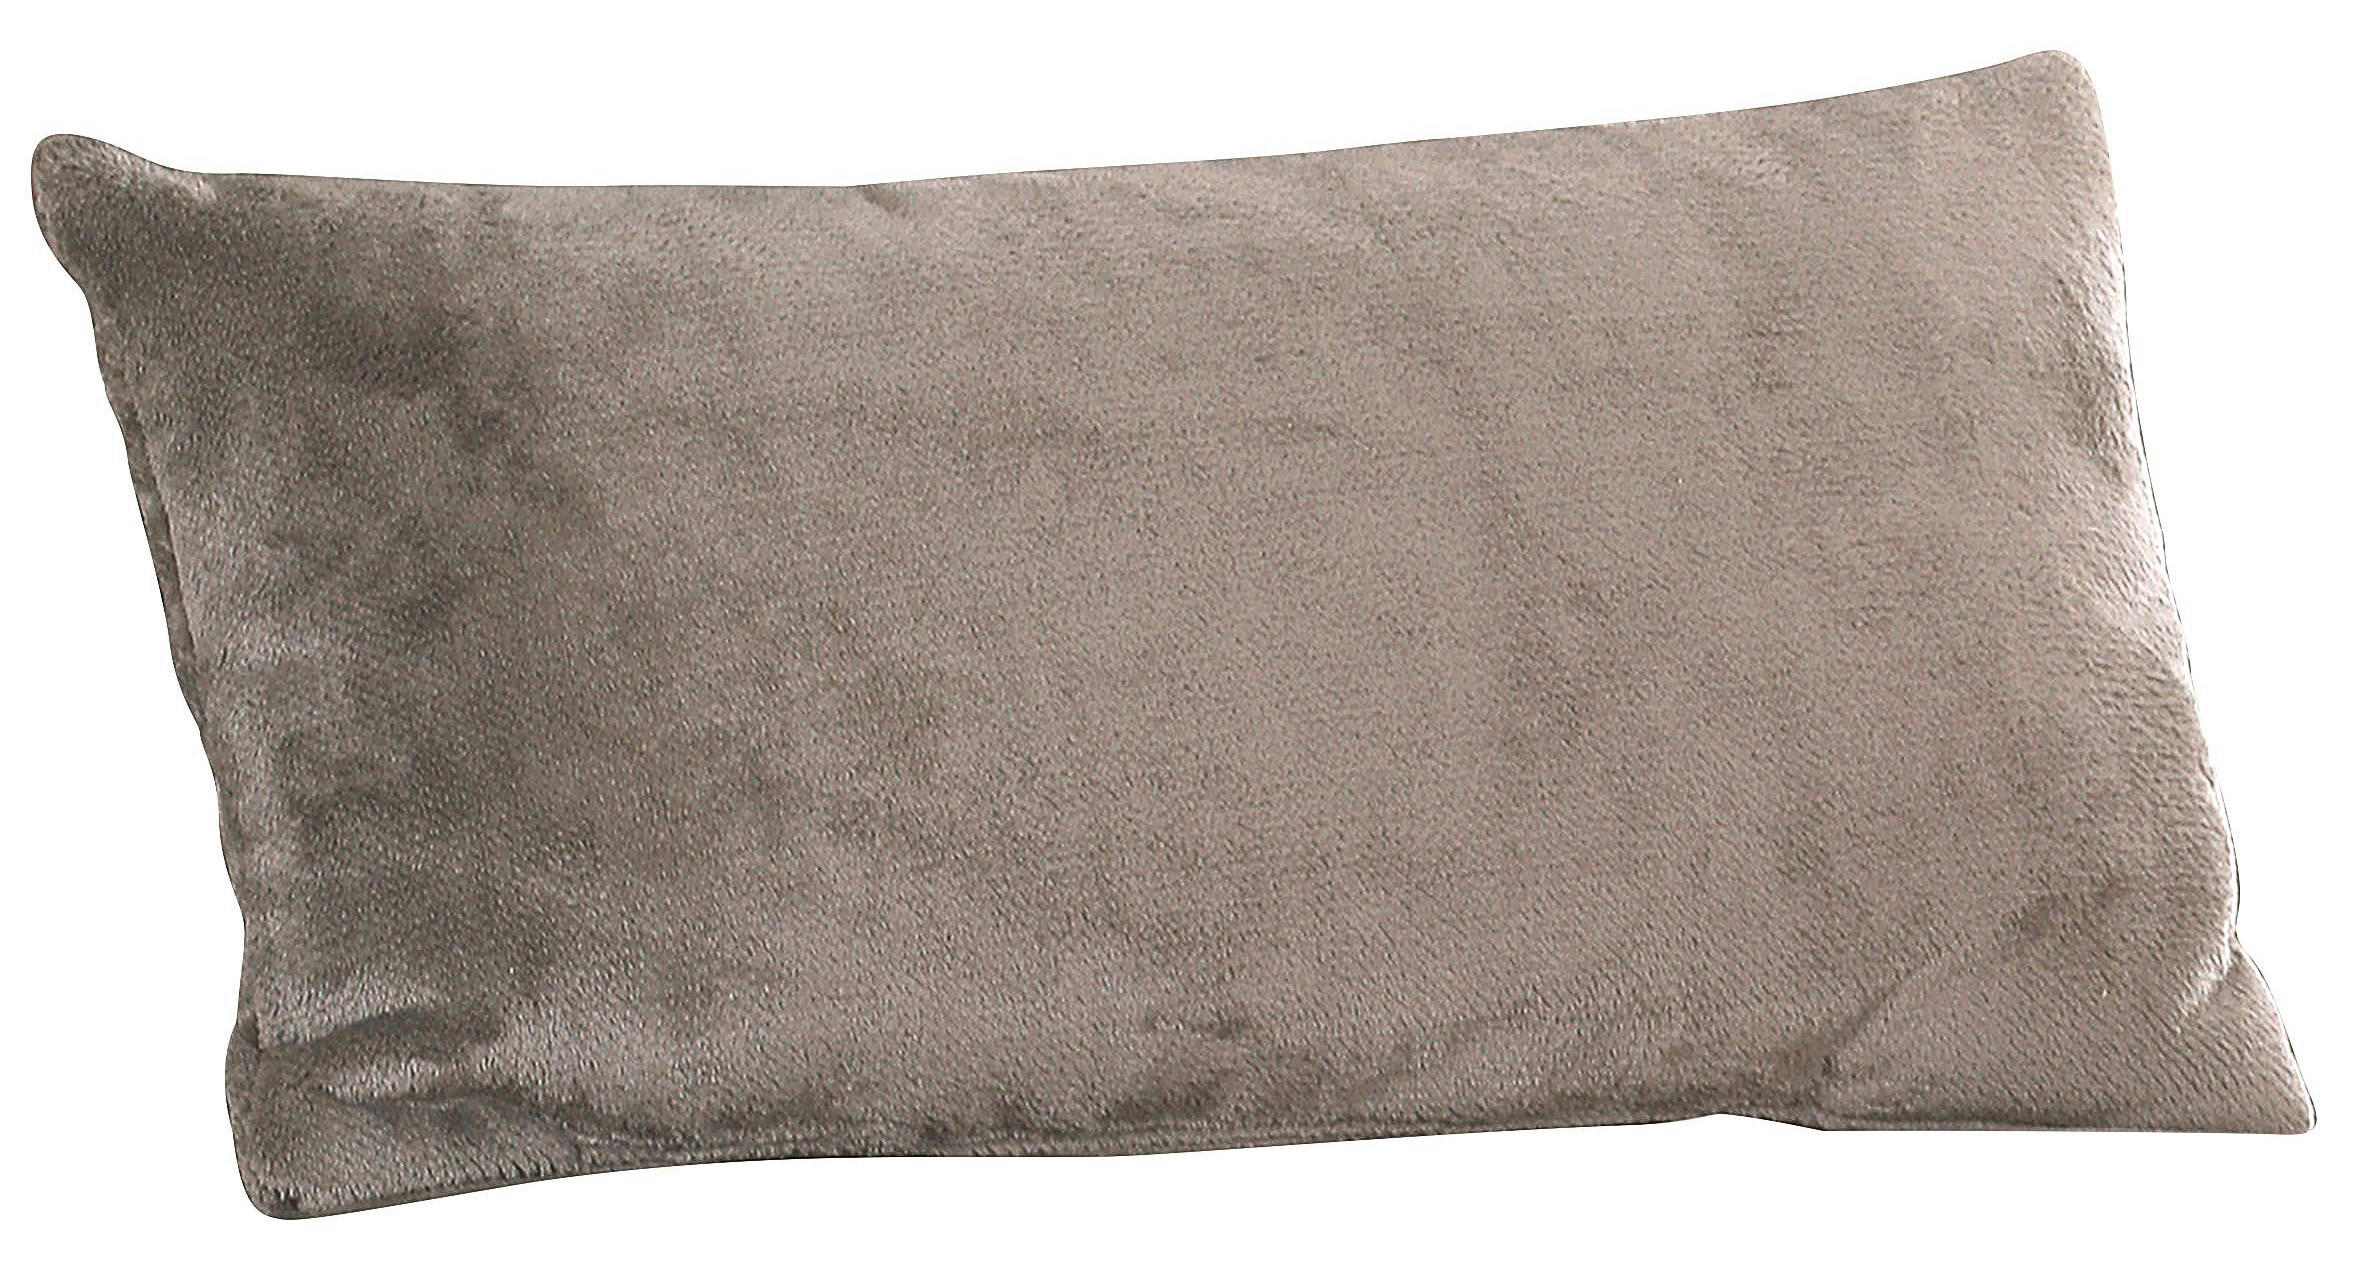 ZIERKISSEN 40/60 cm  - Beige, KONVENTIONELL, Textil (40/60cm) - Carryhome